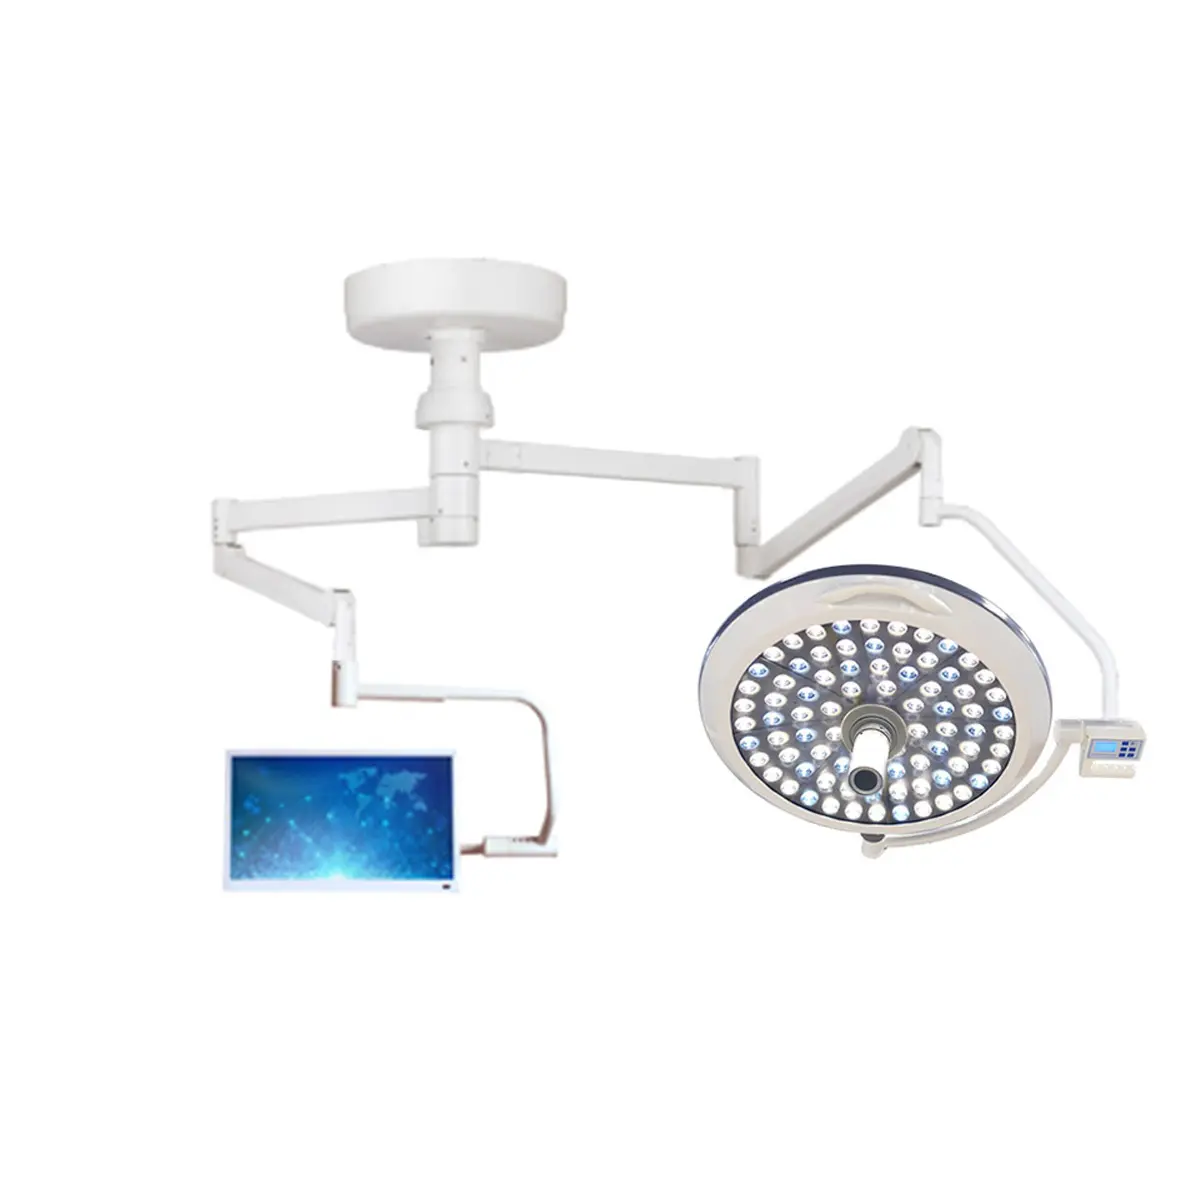 Luz LED quirúrgica de techo para hospitales y clínicas, sistema operativo E700 con cámara HD interna